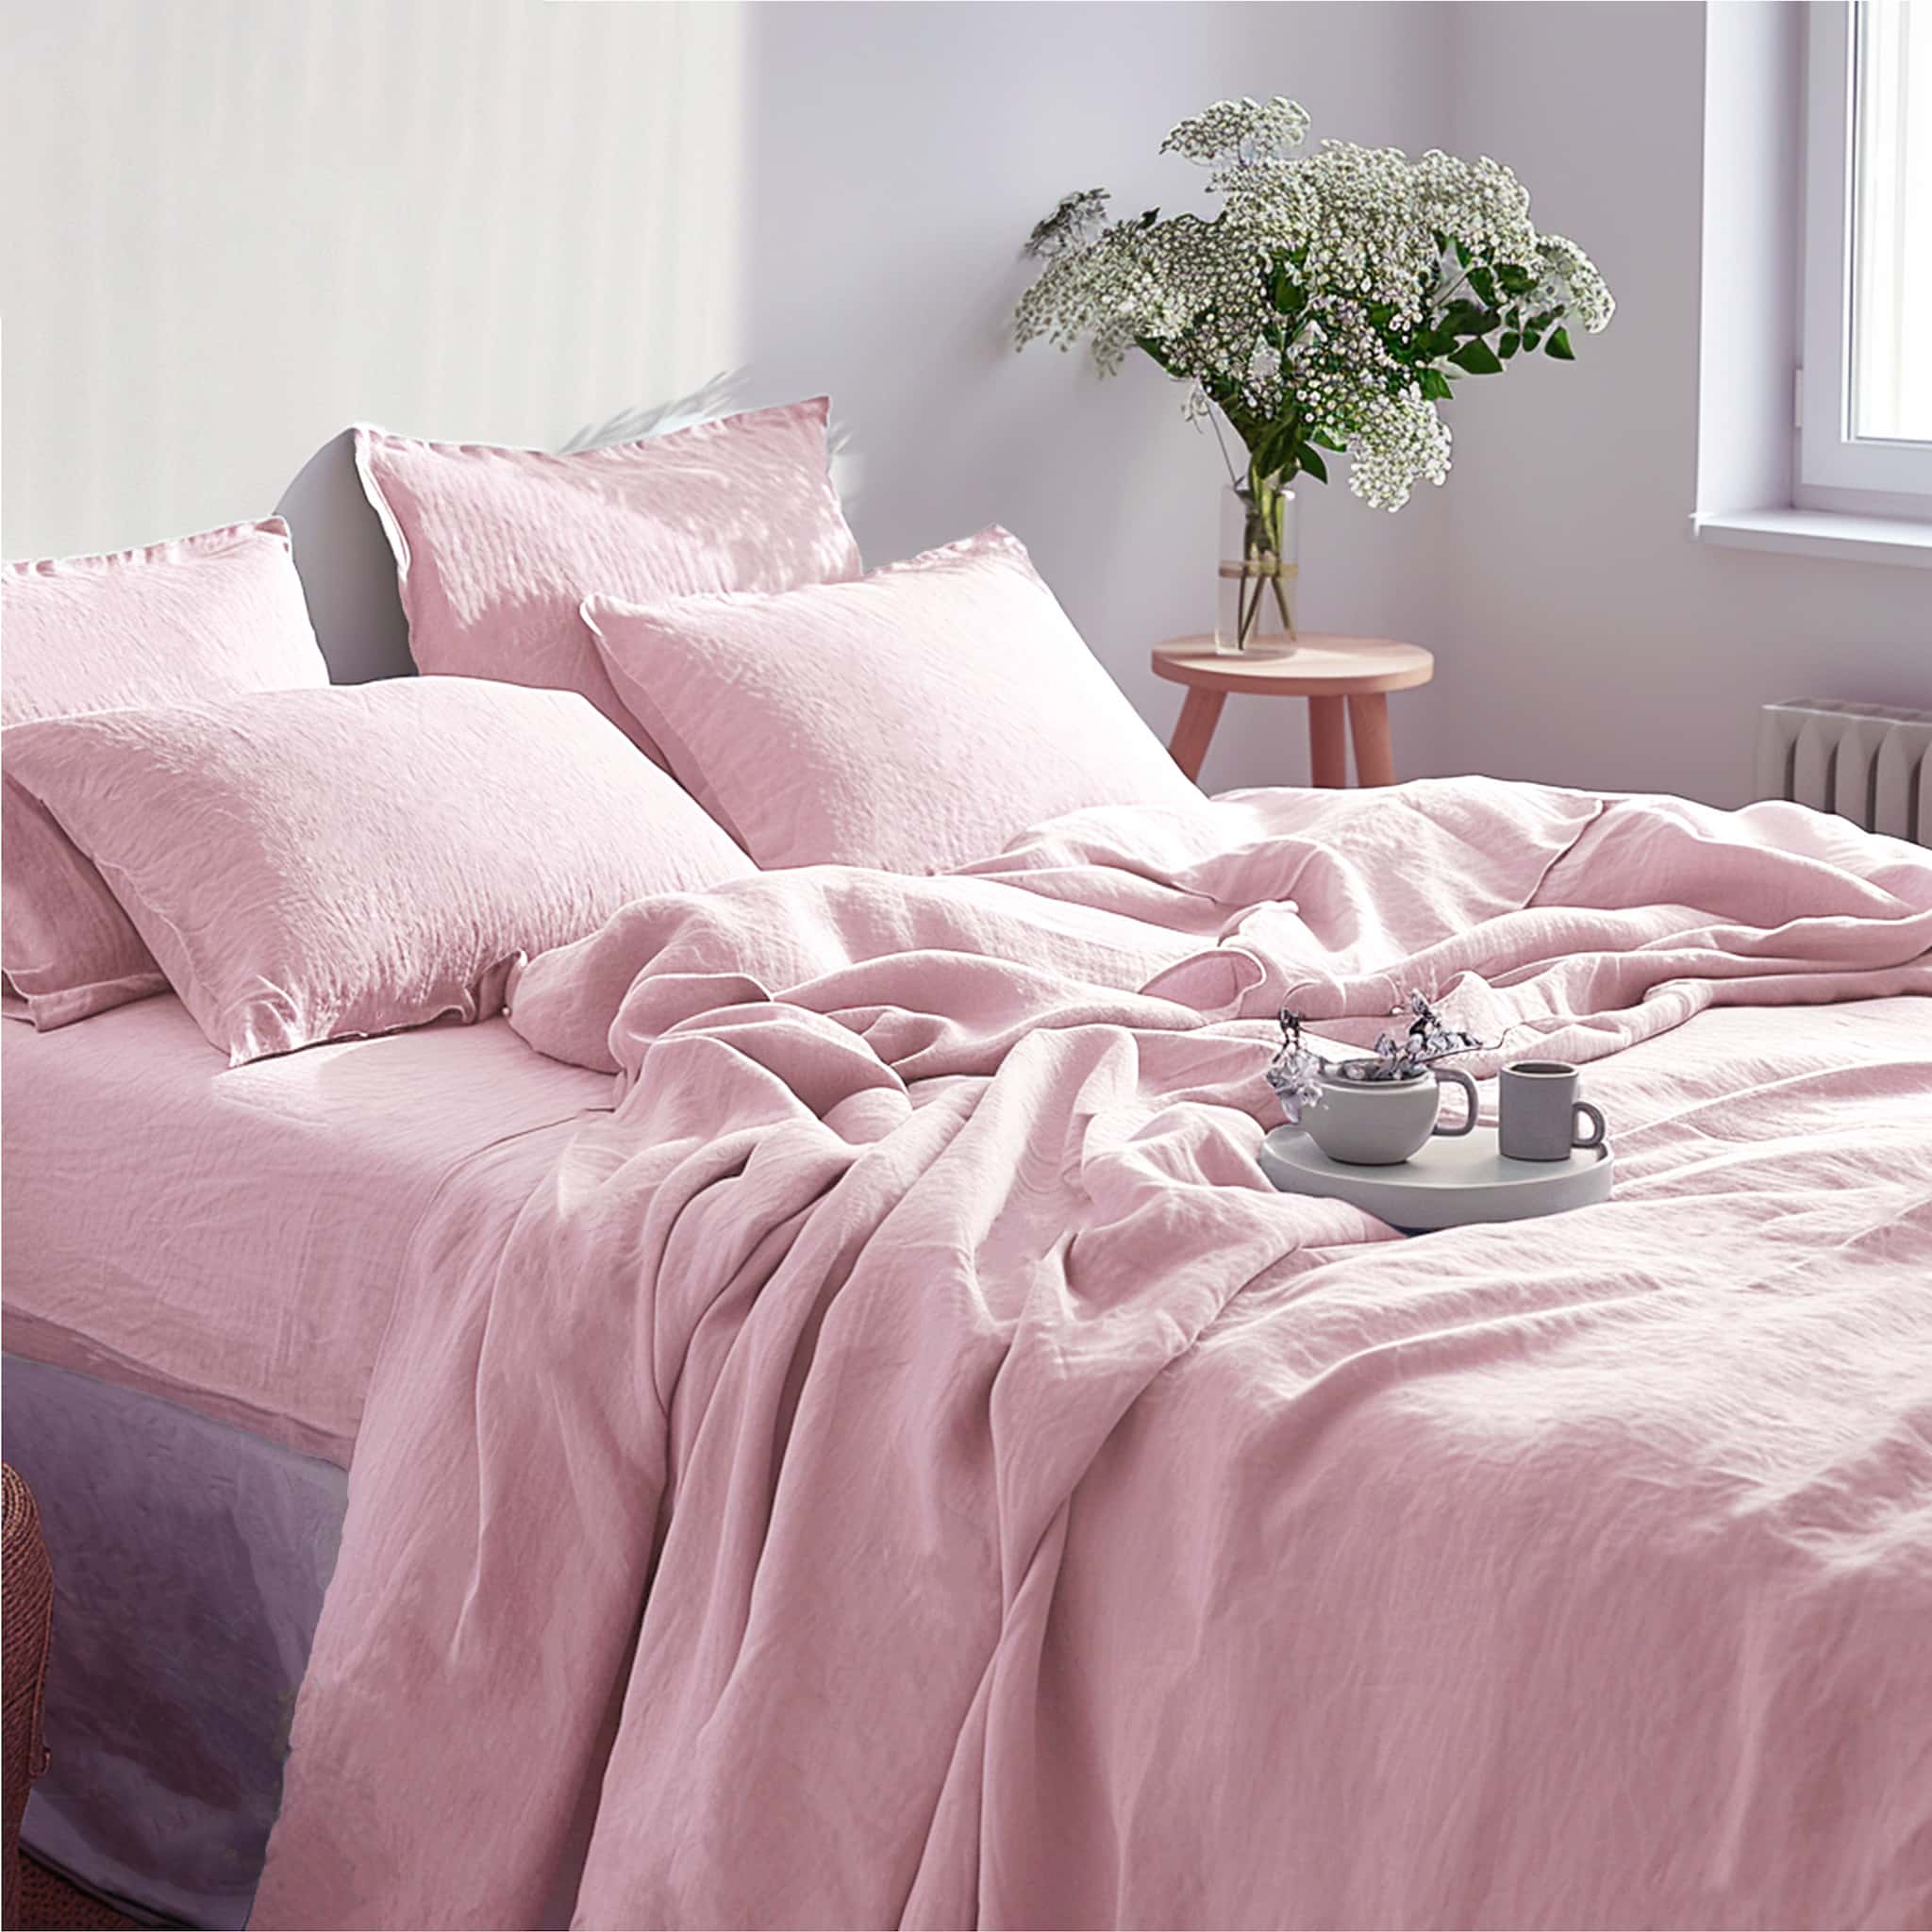 Soft Pink Linen Sheet Set